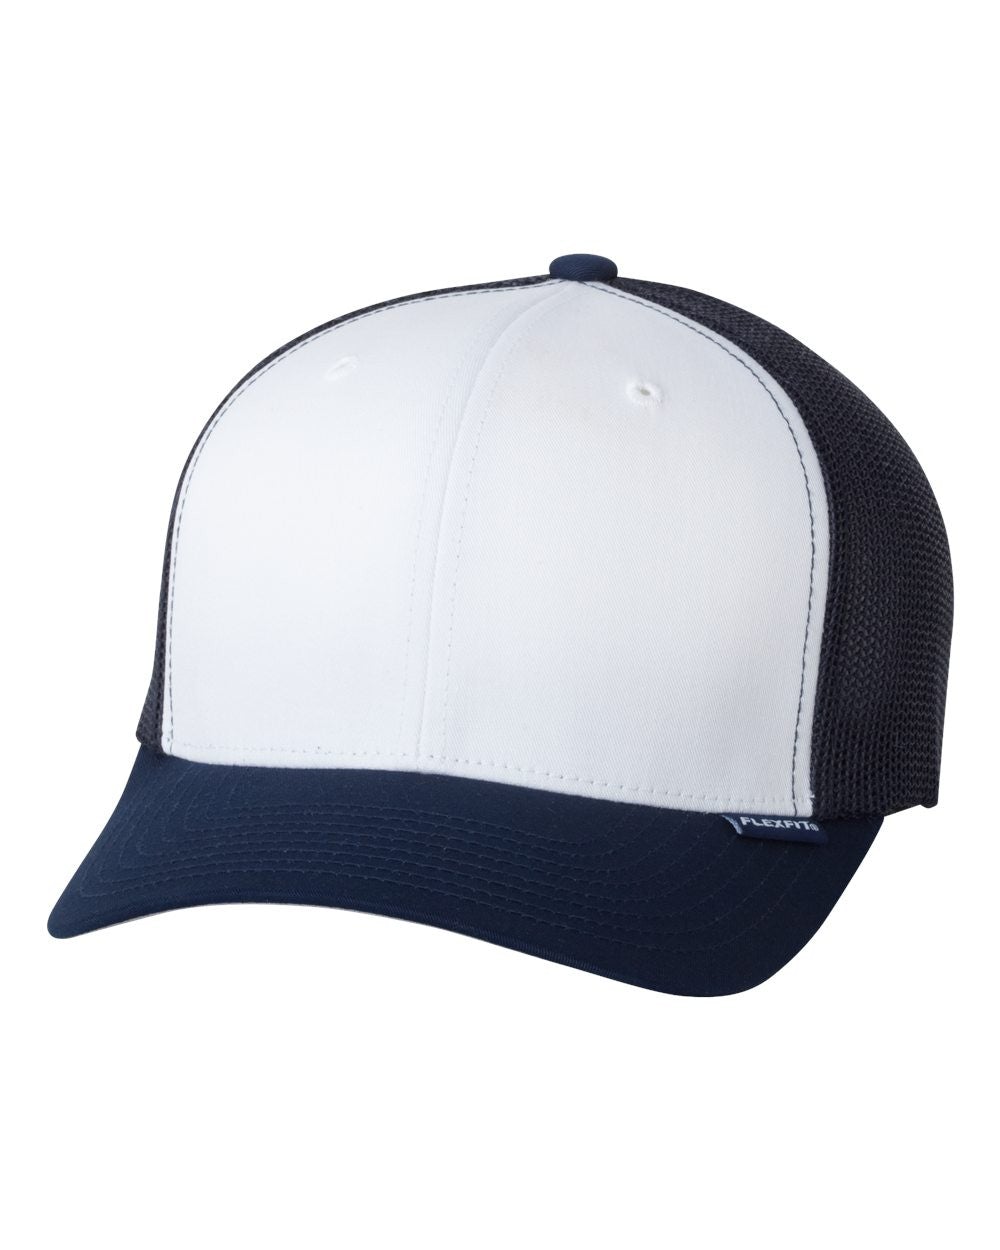 Blank Foam Trucker Hats - BK Caps Foam Front Mid Profile Mesh Back (44 Colors) - 3025